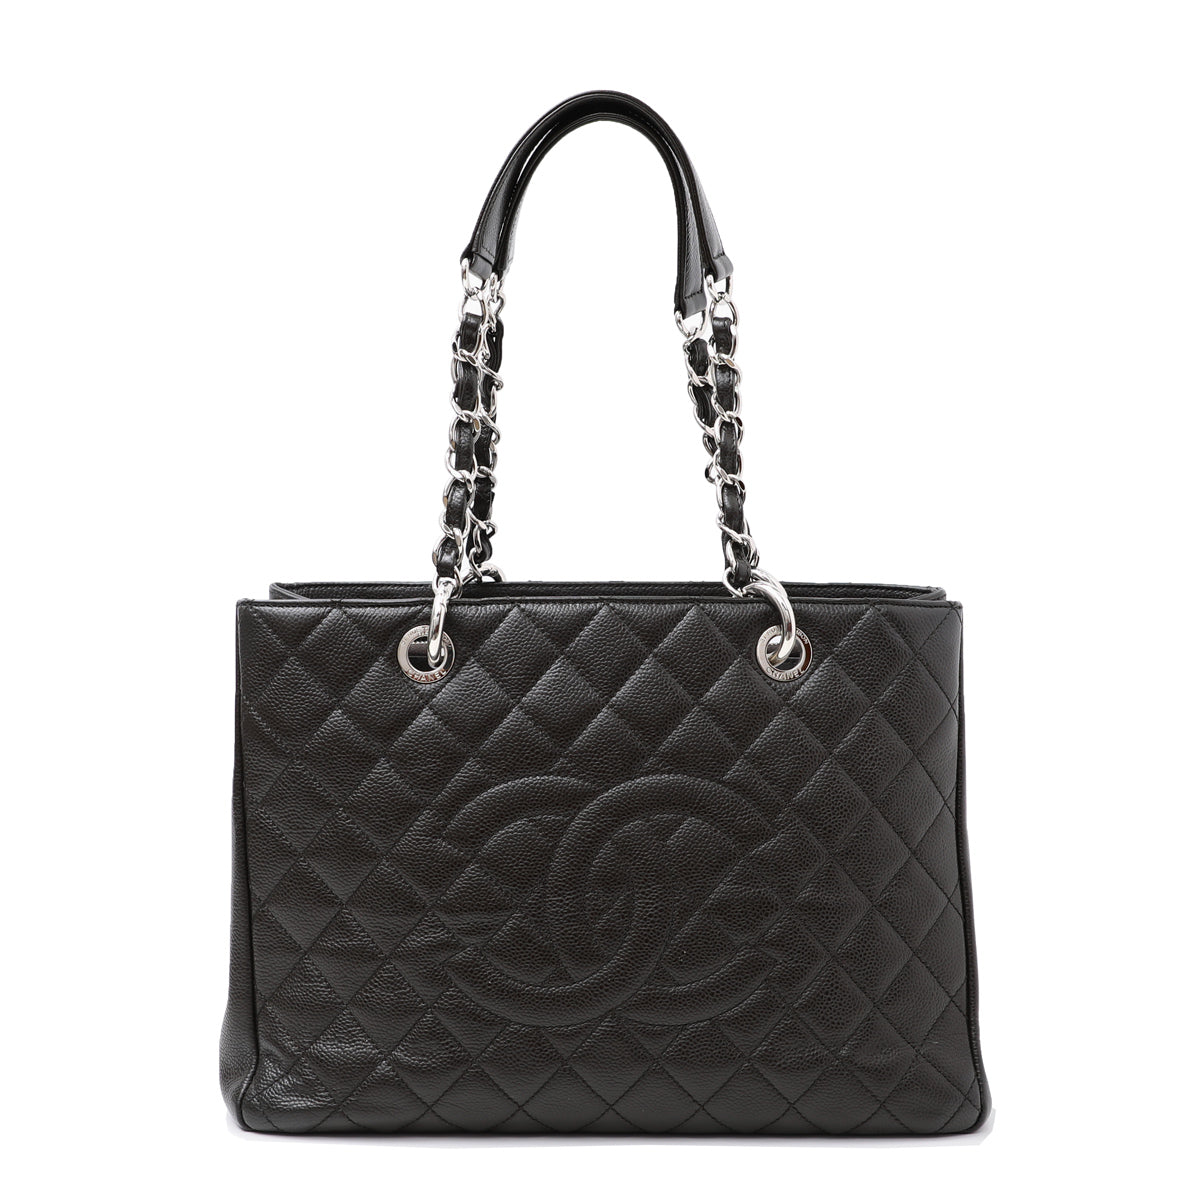 Chanel Dark Brown Gst Bag